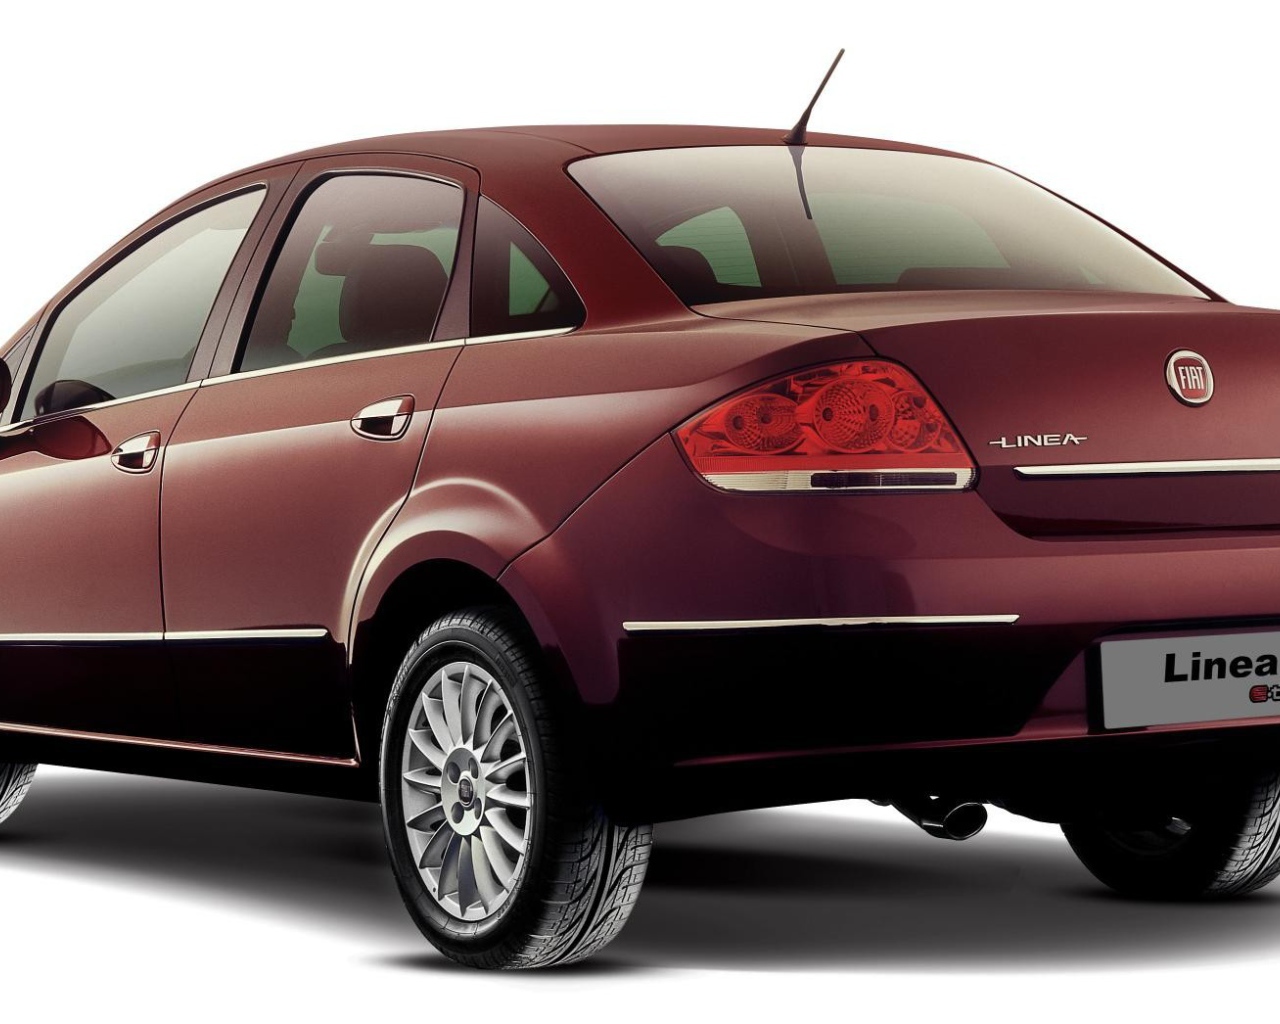 Новый автомобиль Fiat Linea, темно коричневый цвет